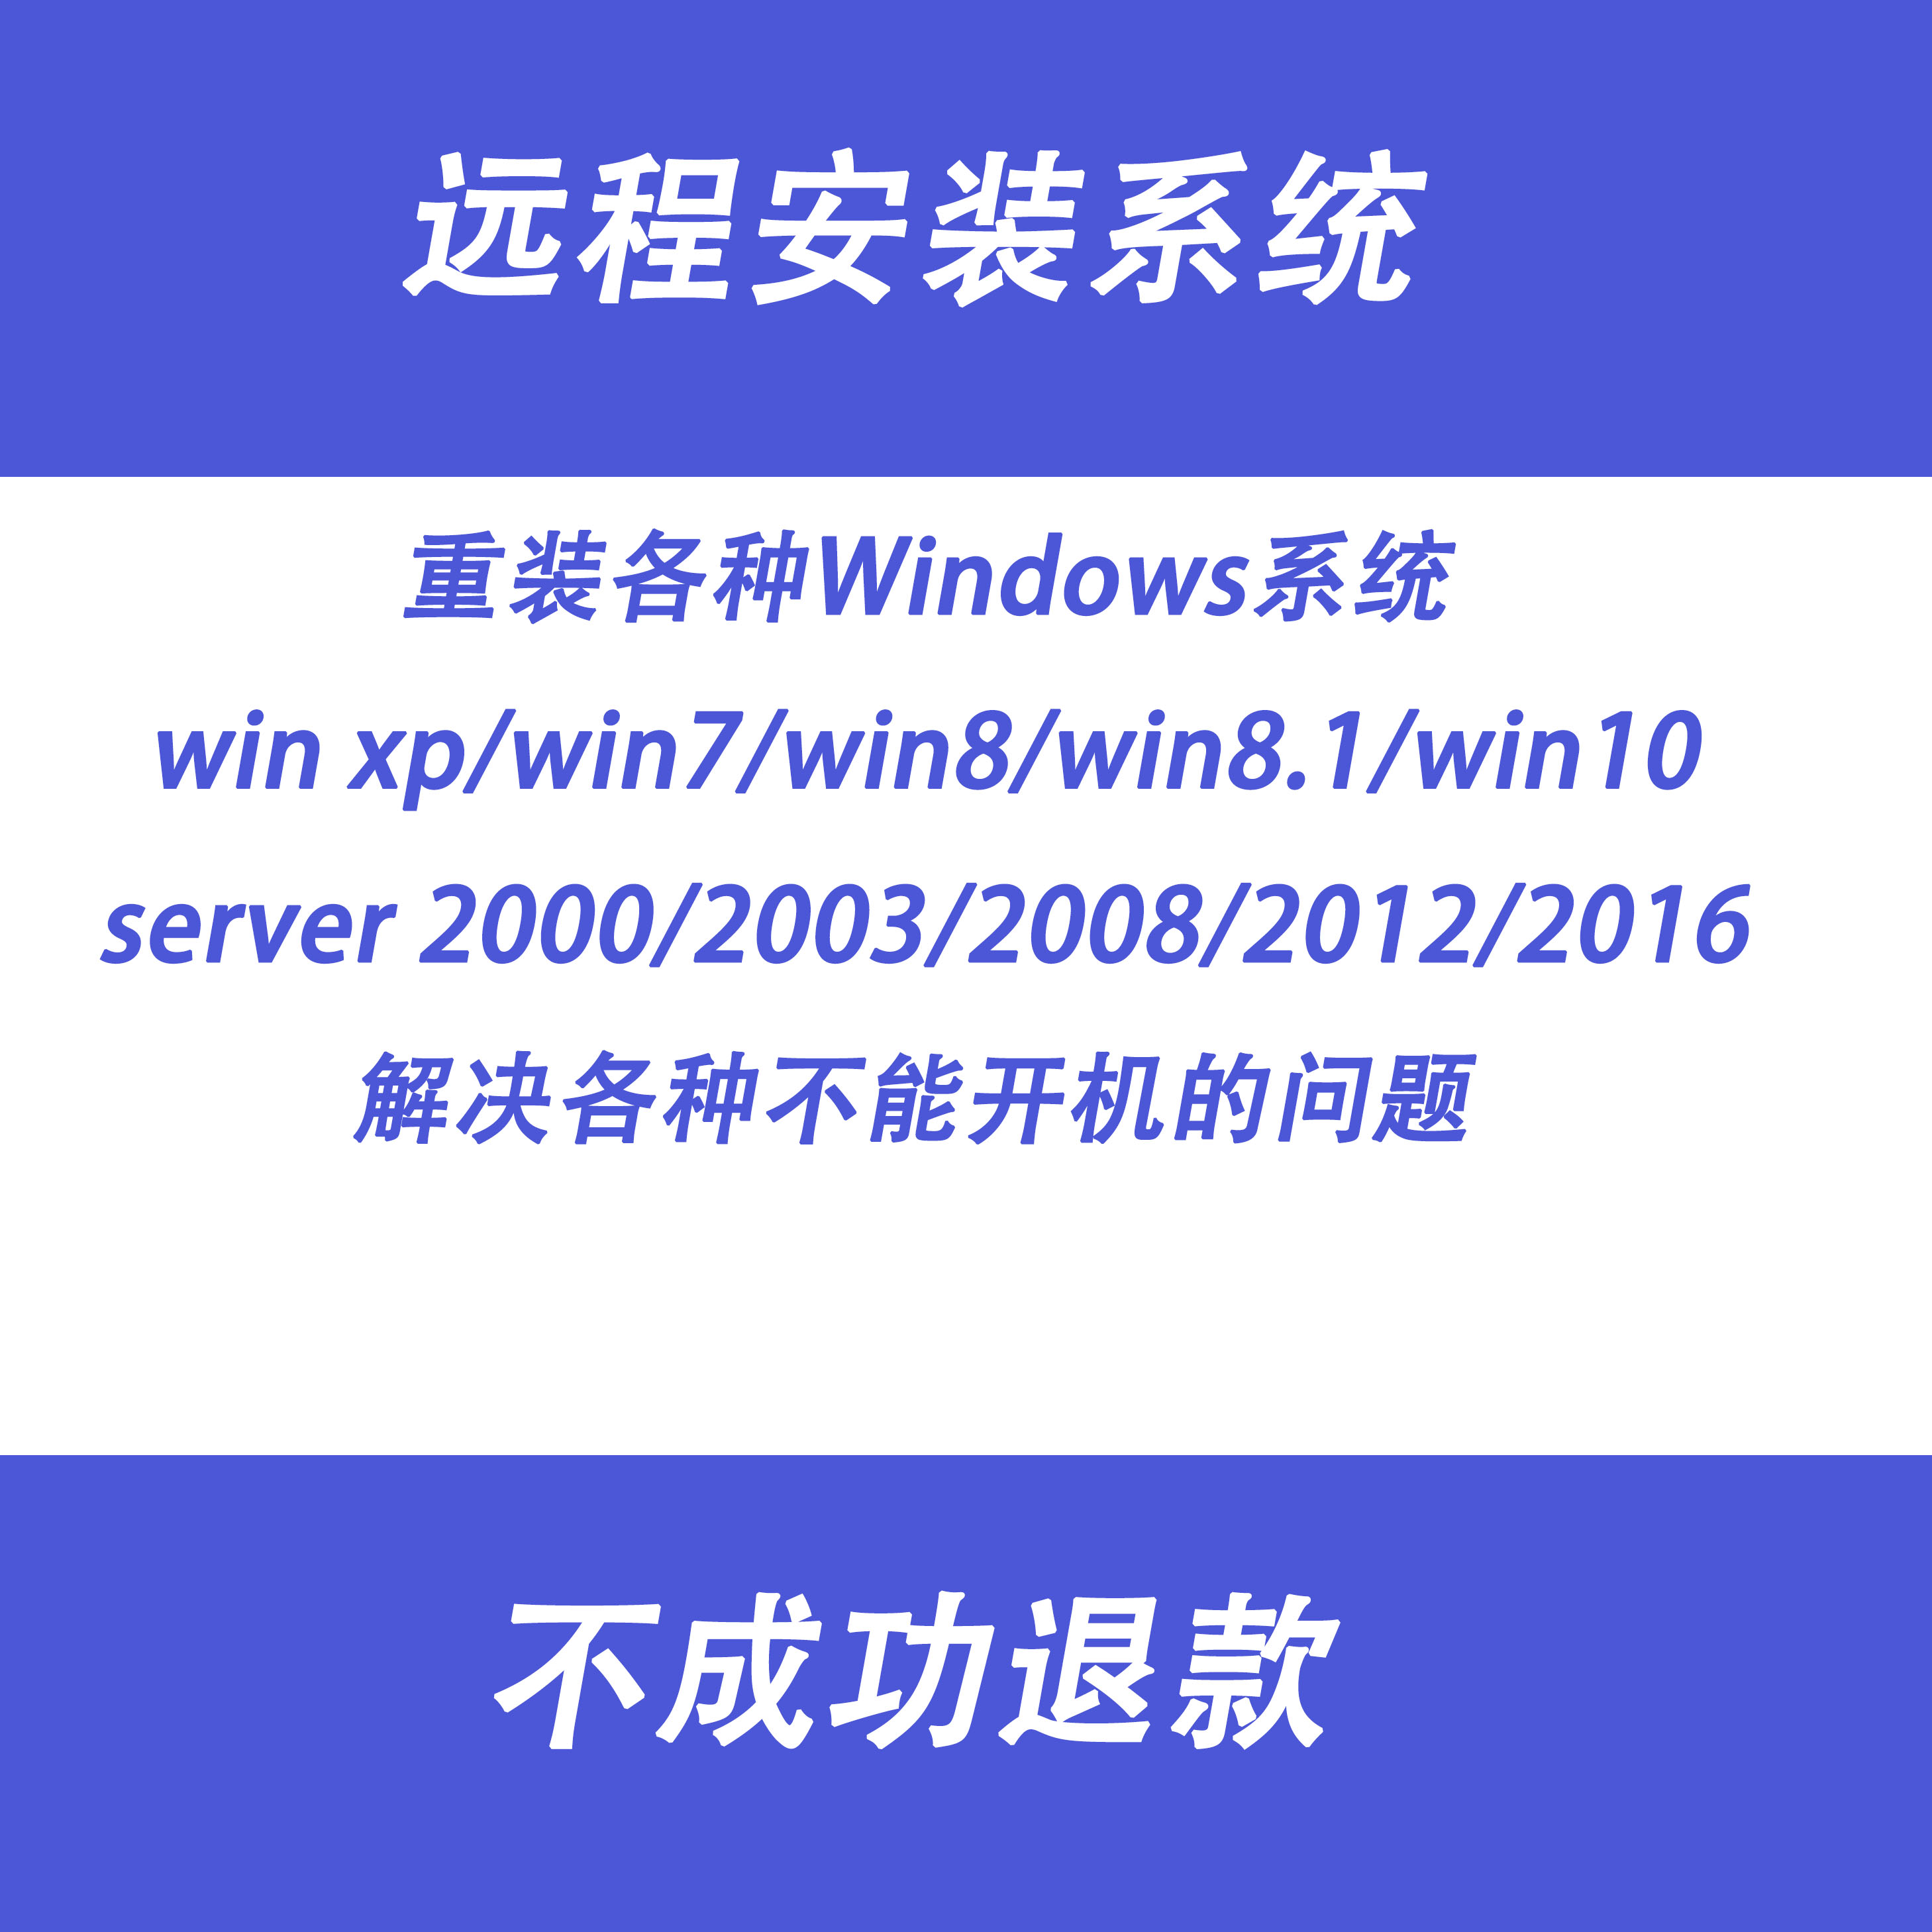 广州市 windows系统远程安装server2000/2003/2008/2012/2016维修